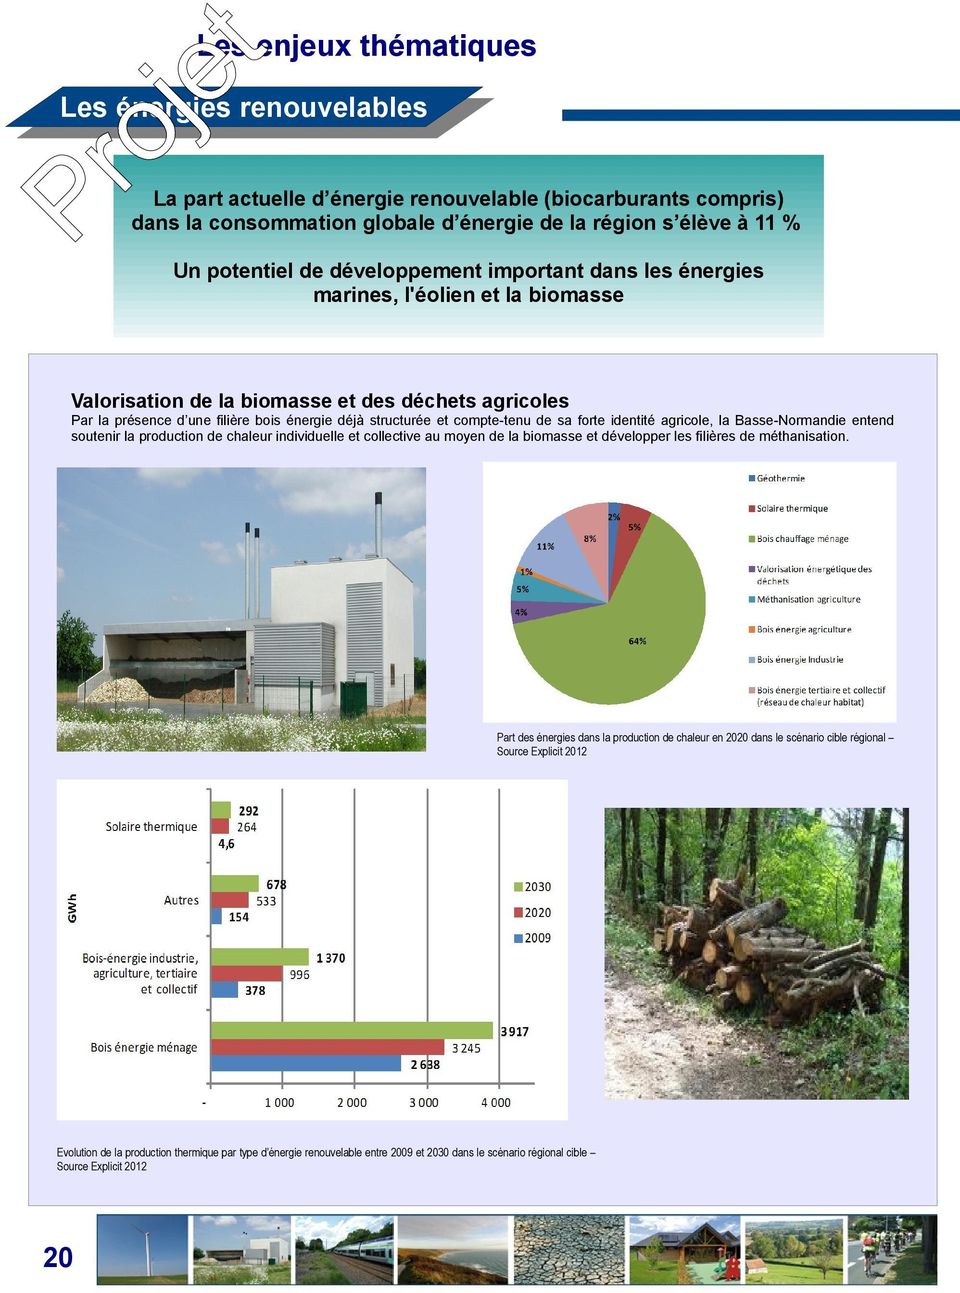 structurée compte-tenu de sa forte identité agricole, la Basse-Normandie entend soutenir la production de chaleur individuelle collective au moyen de la biomasse développer les filières de